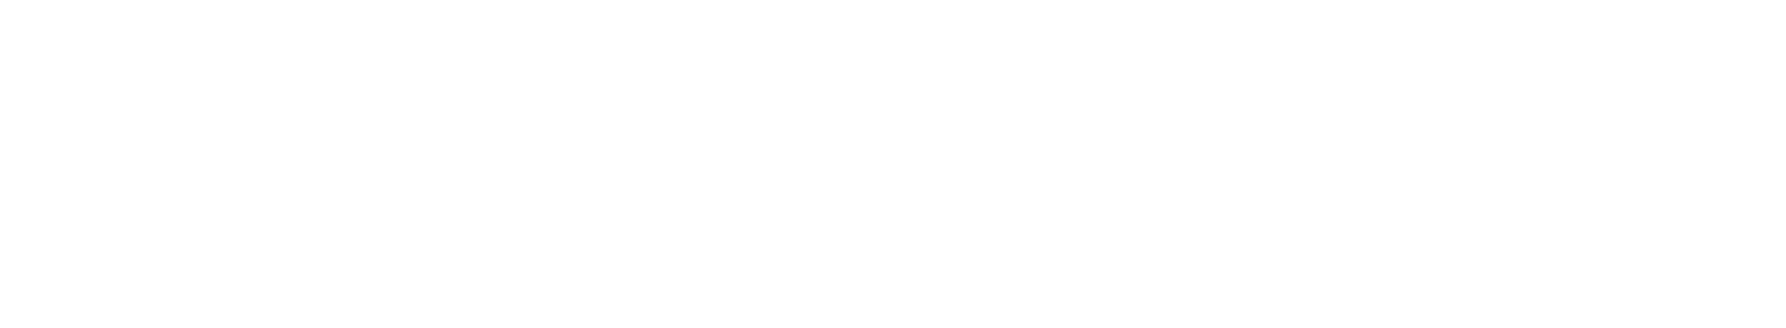 07121-81552